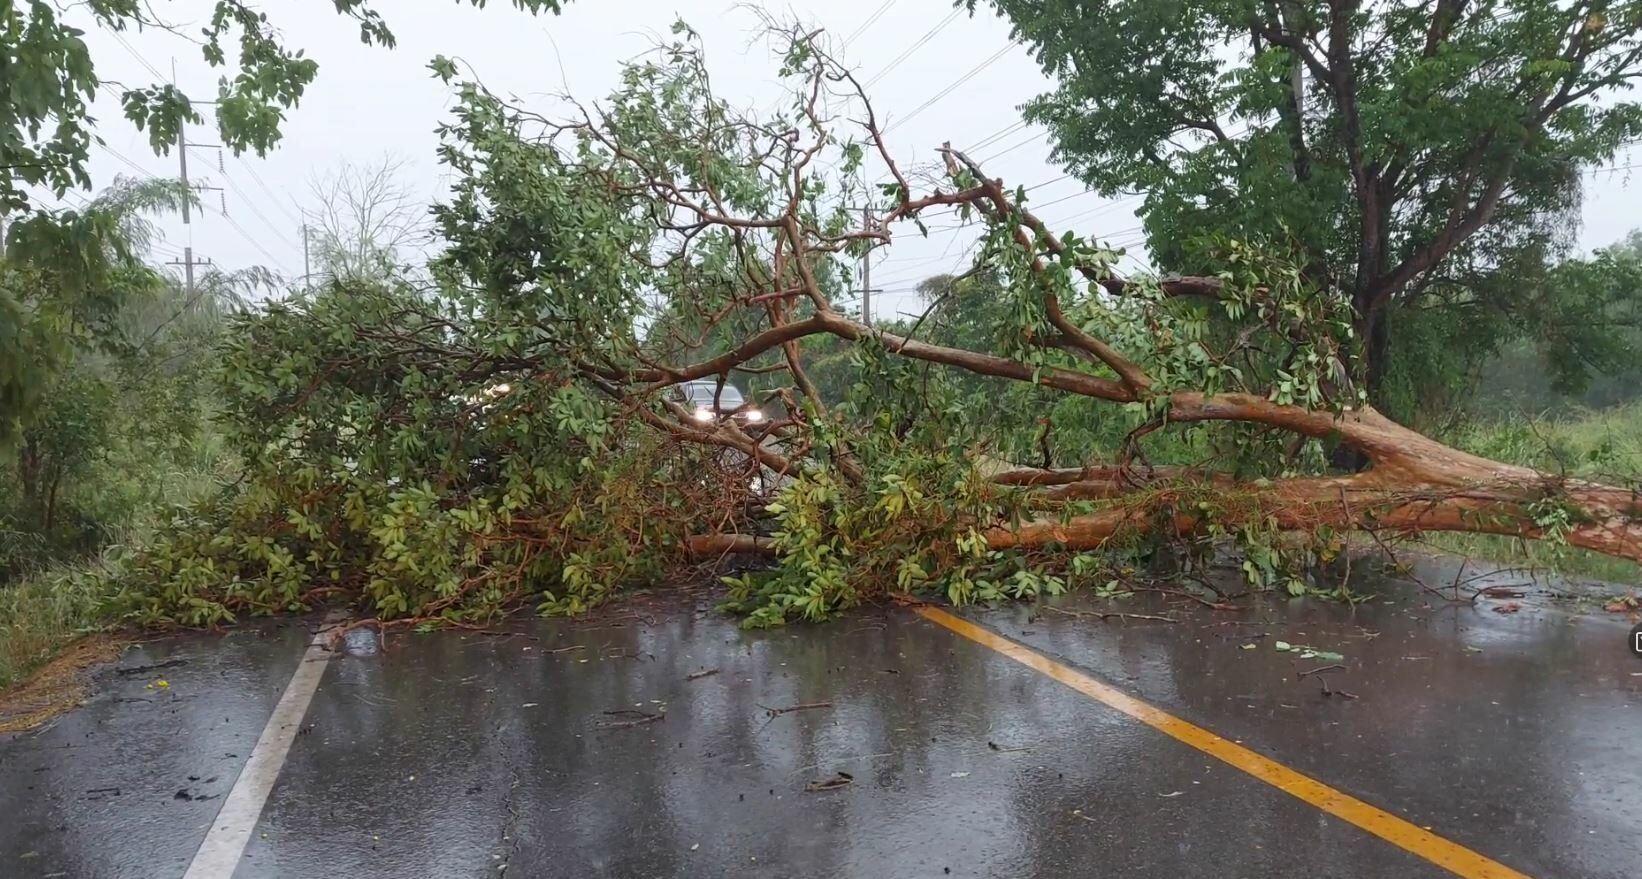 ปราจีนฯ พายุกระหน่ำ ลูกเห็บตก ต้นไม้ล้มข้างทางหลายจุด จราจรรถติดขัดครึ่งชั่วโมง